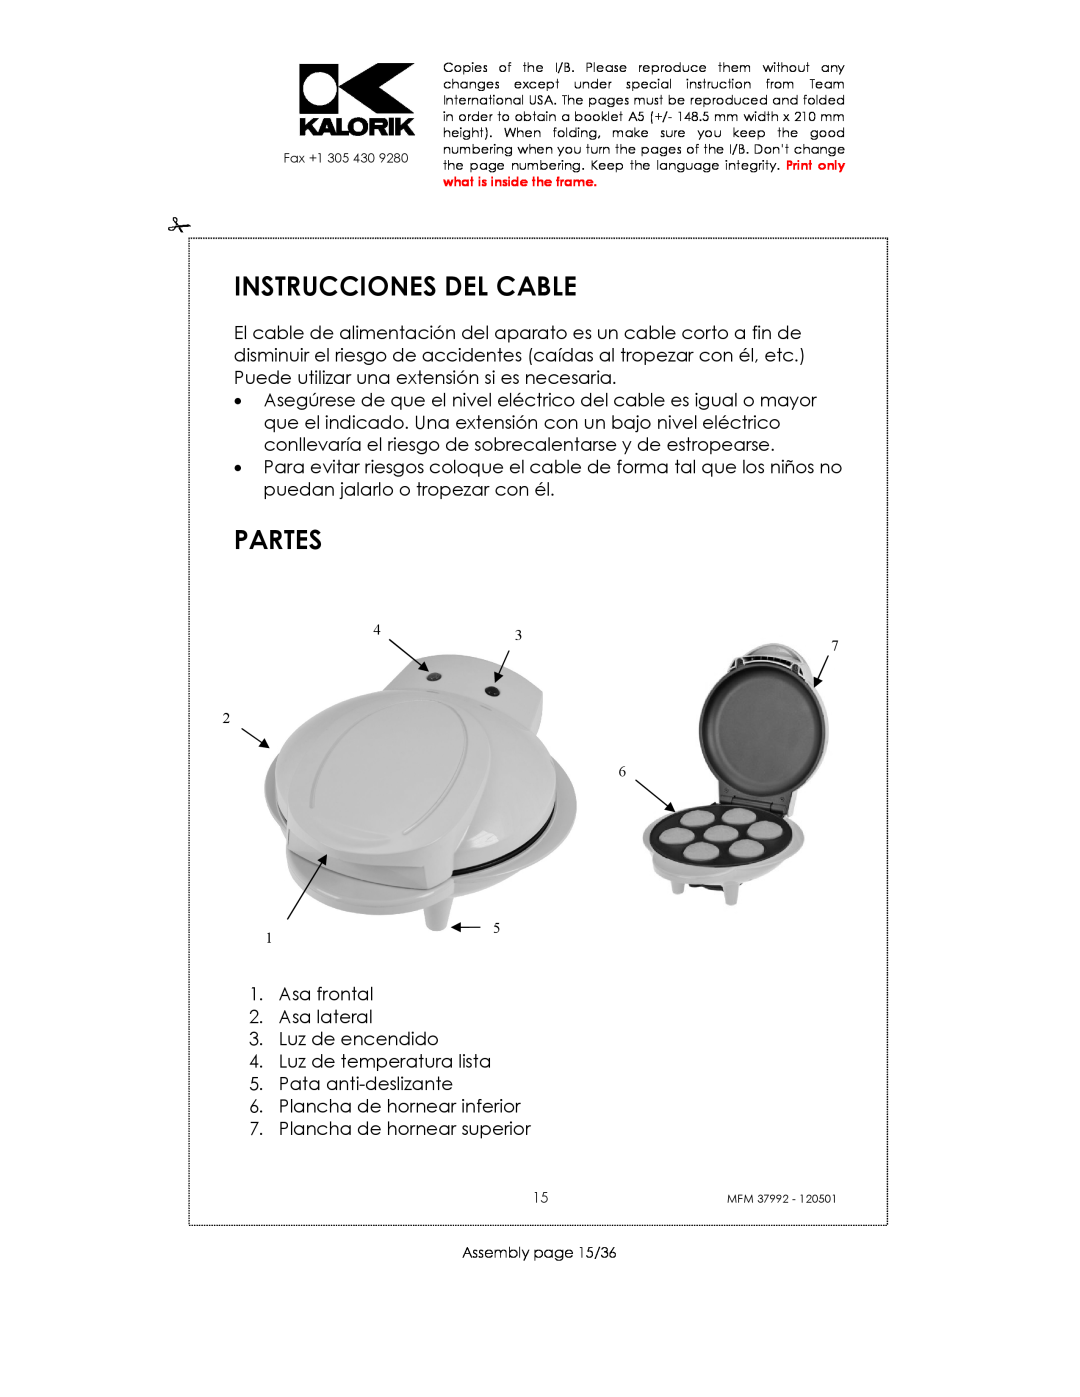 Kalorik MFM 37992 manual Instrucciones Del Cable, Partes 